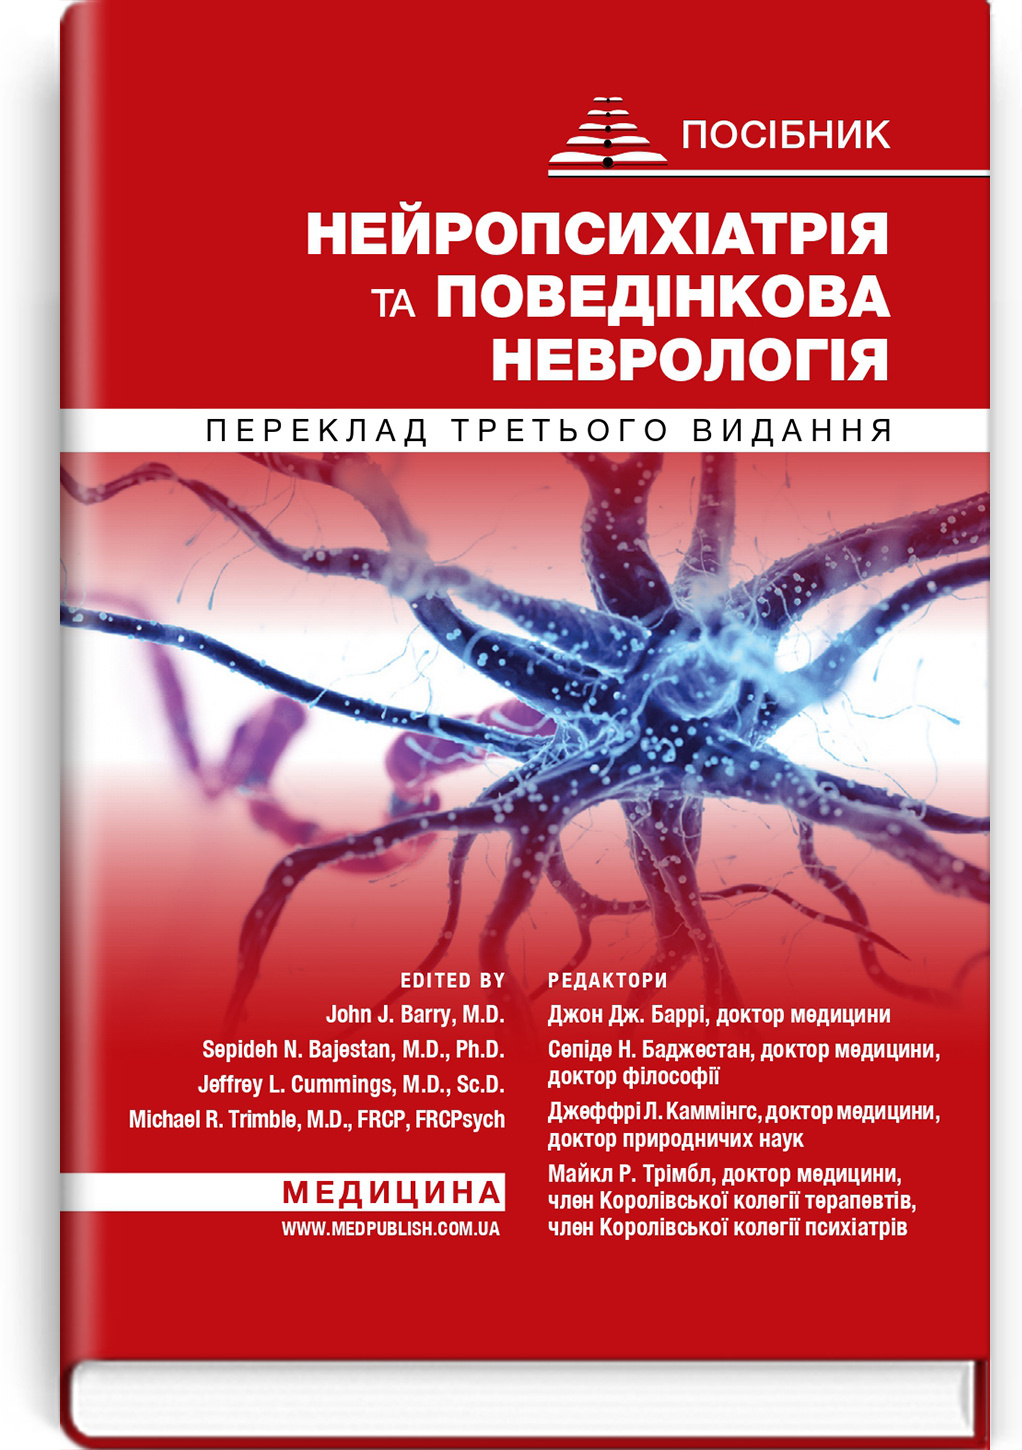 Нейропсихіатрія та поведінкова неврологія: посібник: 3-є видання. Автор — Редактори. 